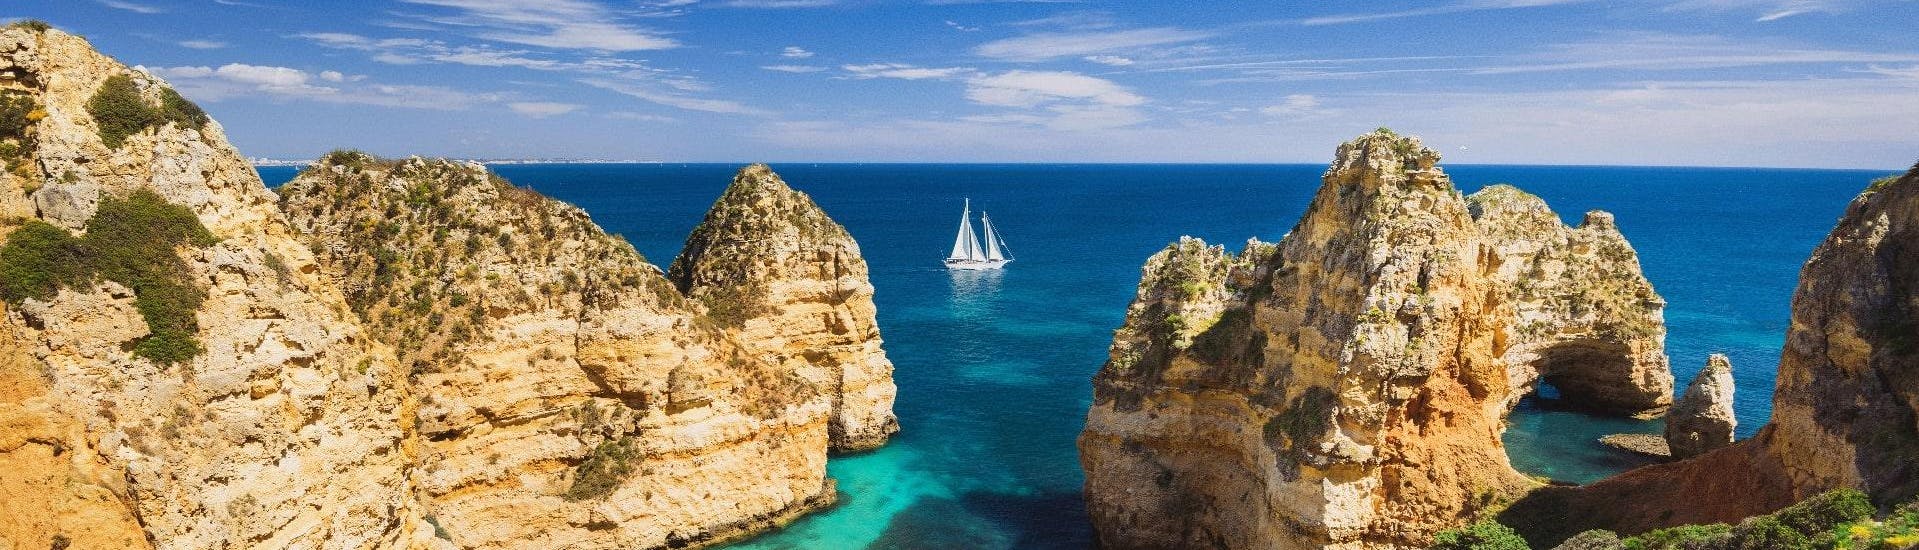 Una imagen de las impresionantes formaciones rocosas de la costa del Algarve que se pueden ver en un paseo en barco desde Portimão.